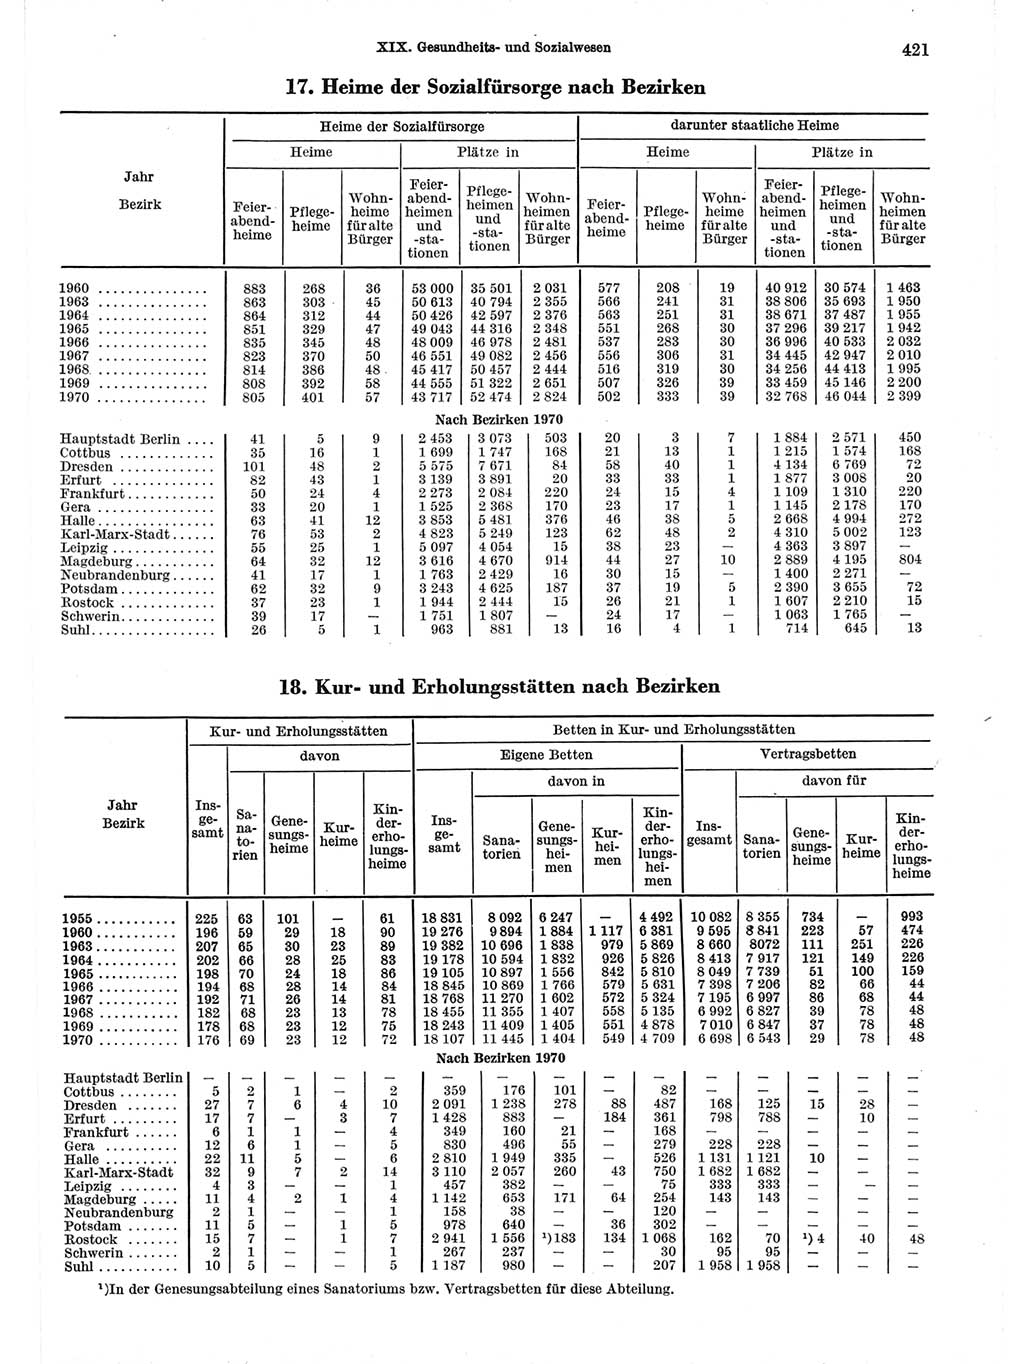 Statistisches Jahrbuch der Deutschen Demokratischen Republik (DDR) 1971, Seite 421 (Stat. Jb. DDR 1971, S. 421)